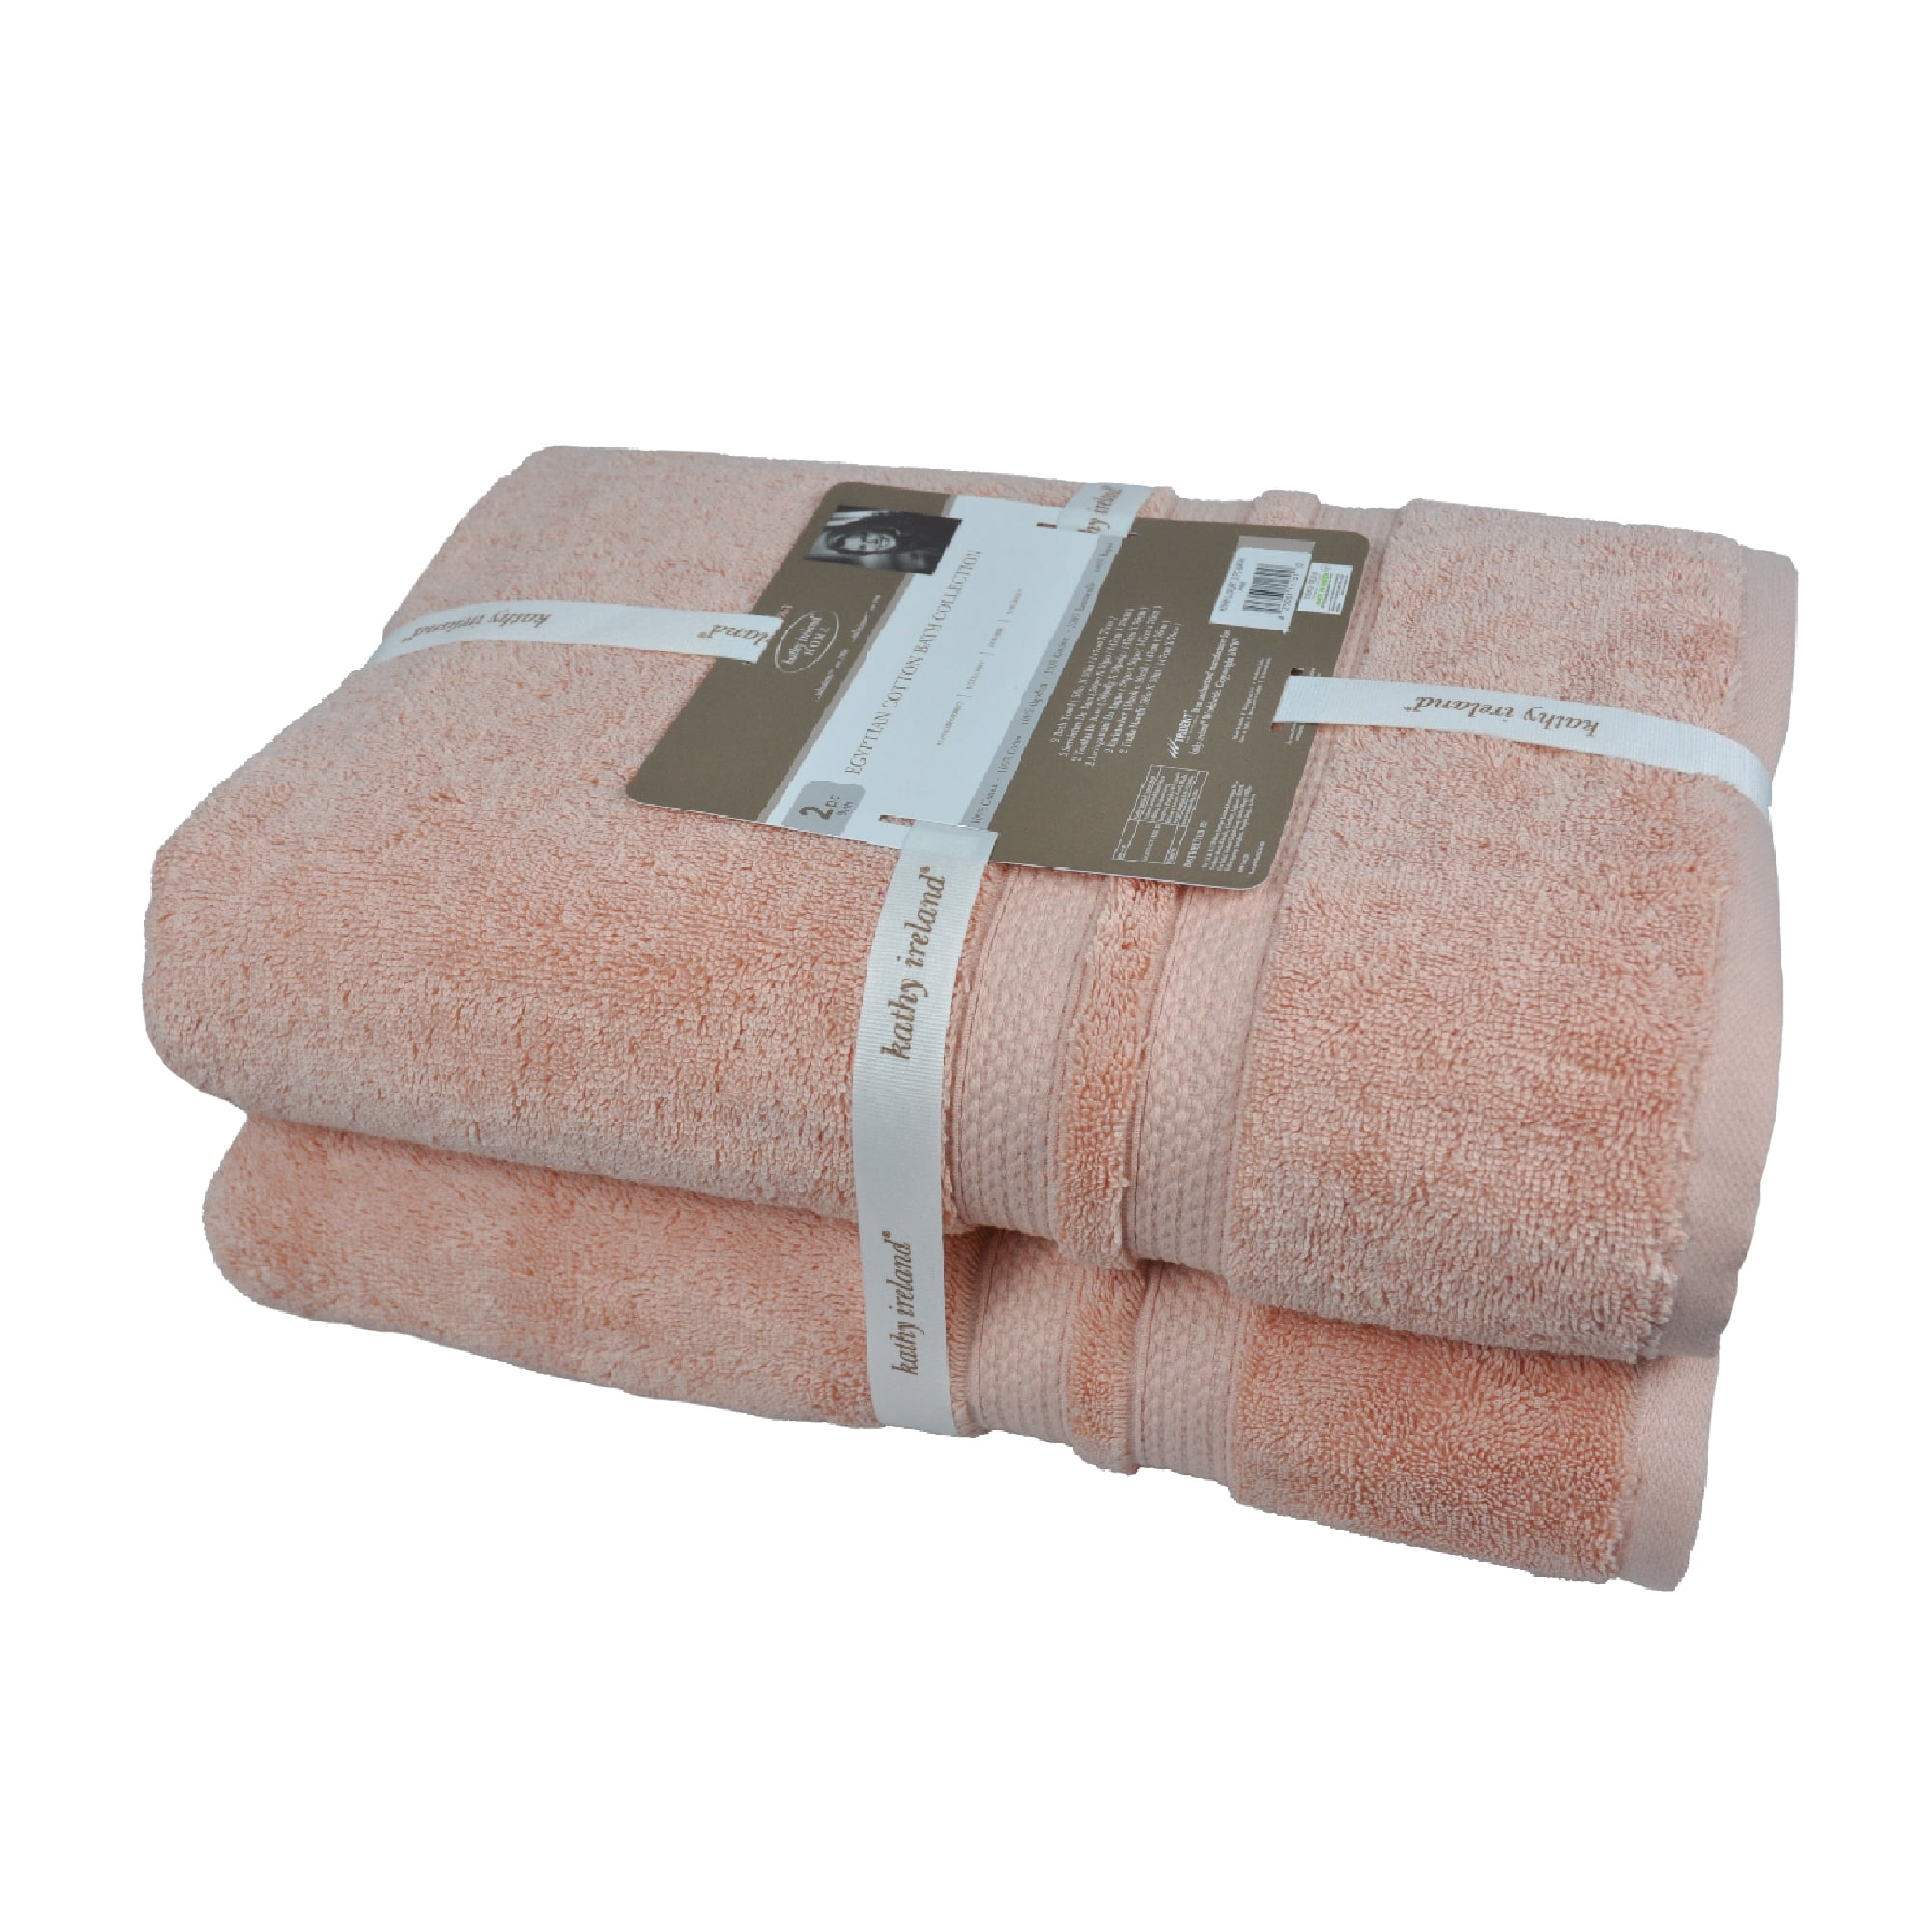 White Classic Luxury 8 Piece Bath Towel Set - 700 GSM Cotton Towels - 2  Bath